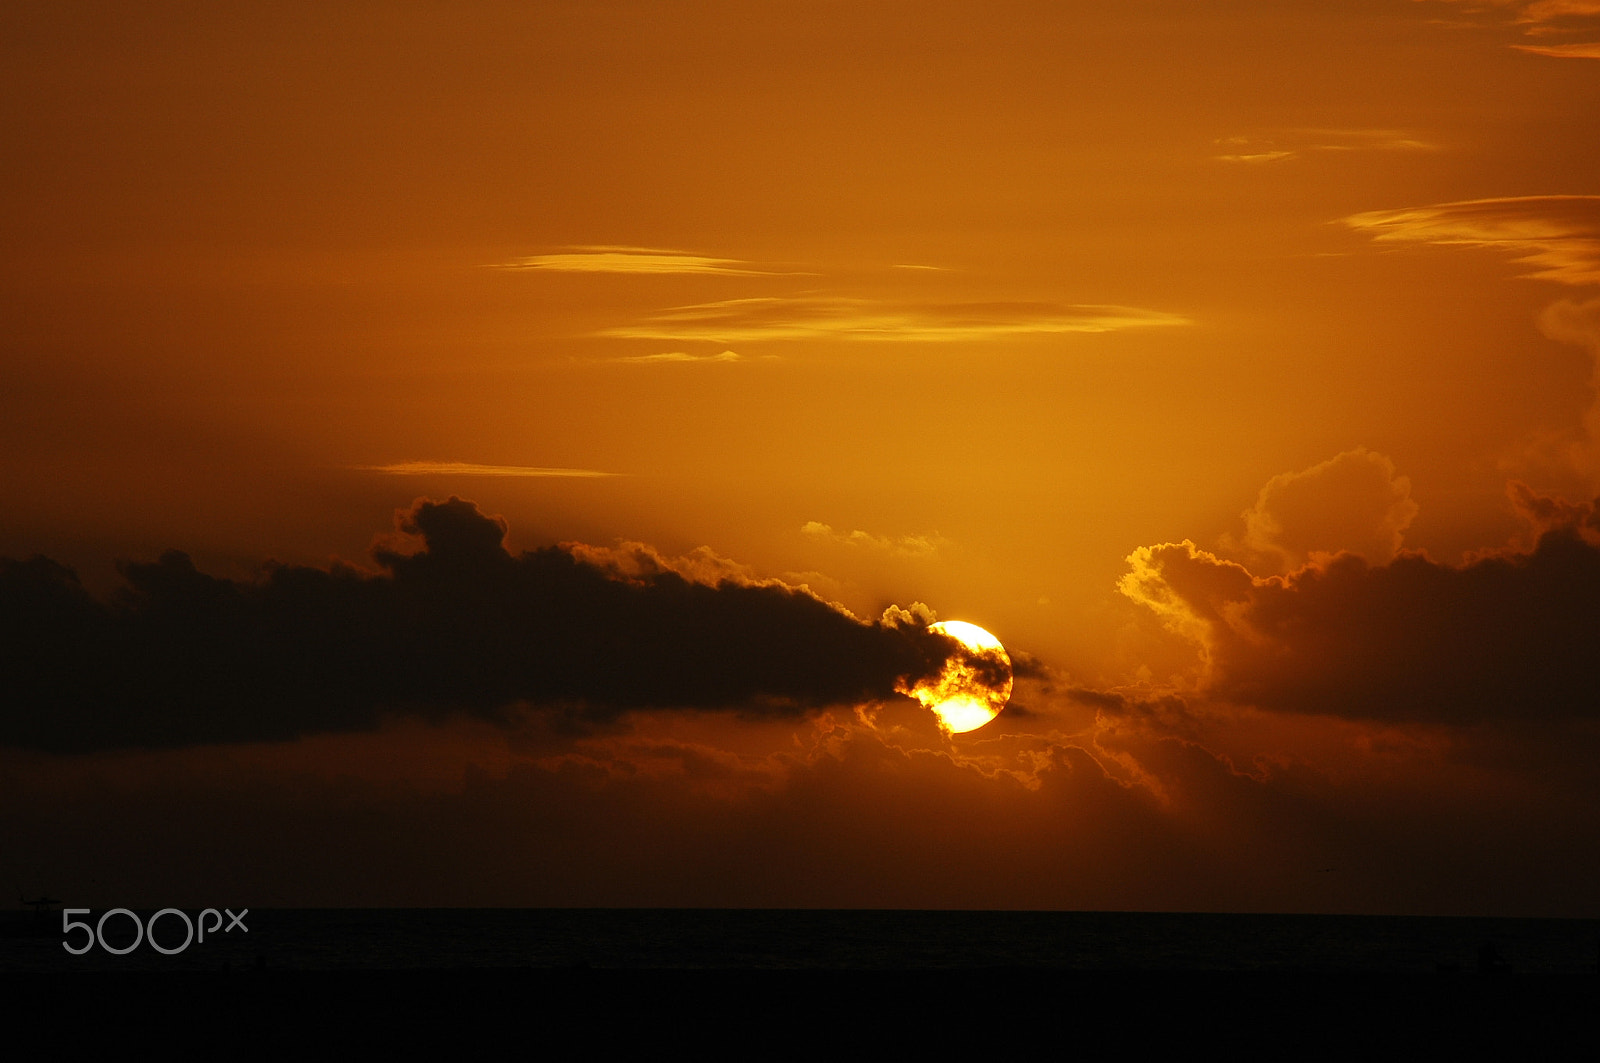 Nikon D70 + AF Zoom-Nikkor 28-200mm f/3.5-5.6G IF-ED sample photo. Florida sunset photography